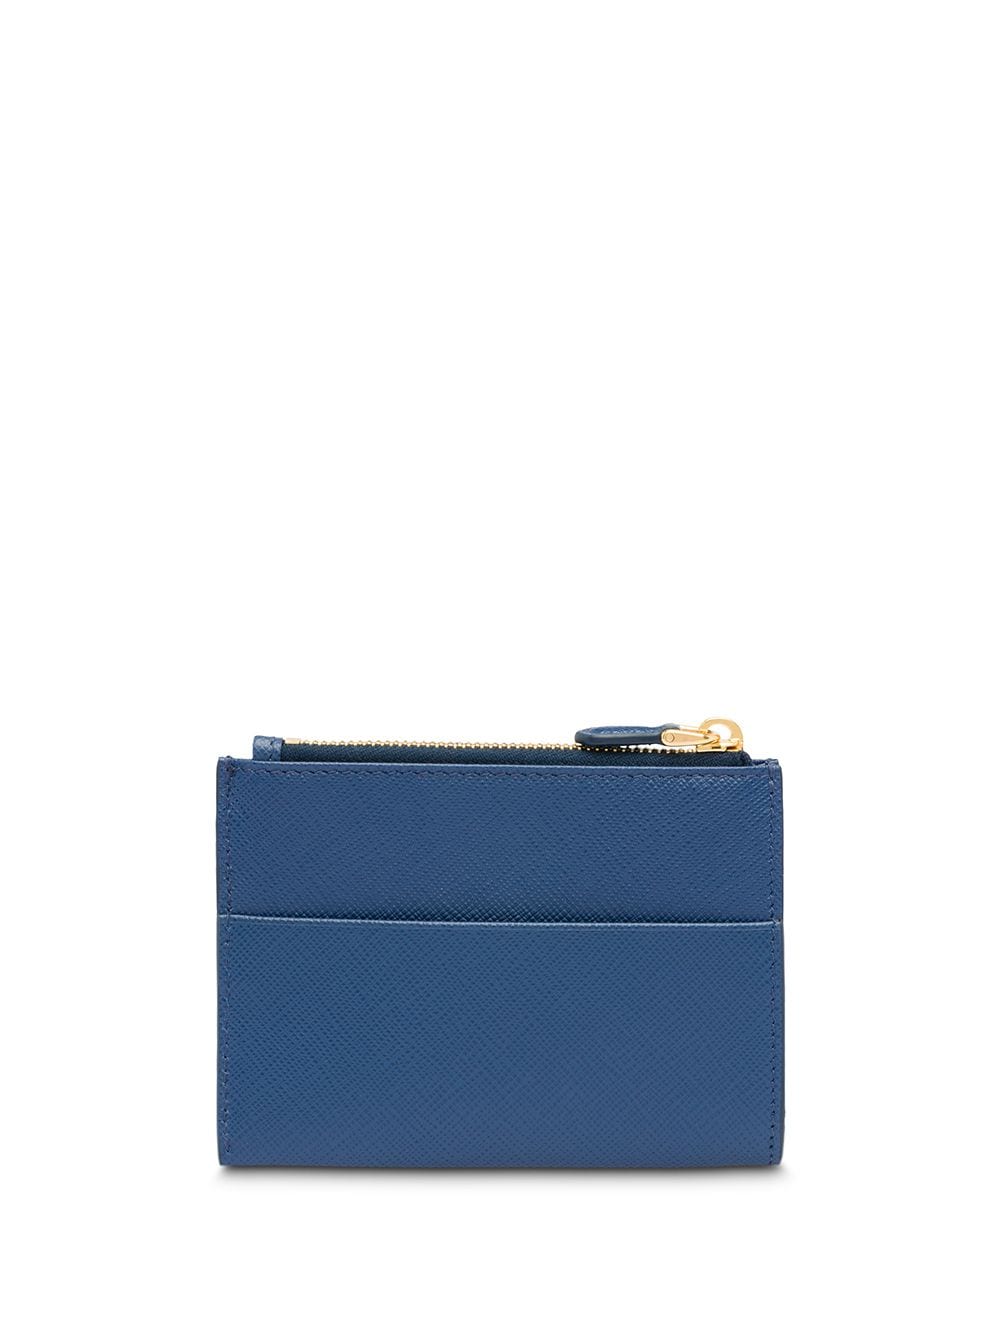 Prada Saffiano Leather Credit Card Holder - Farfetch